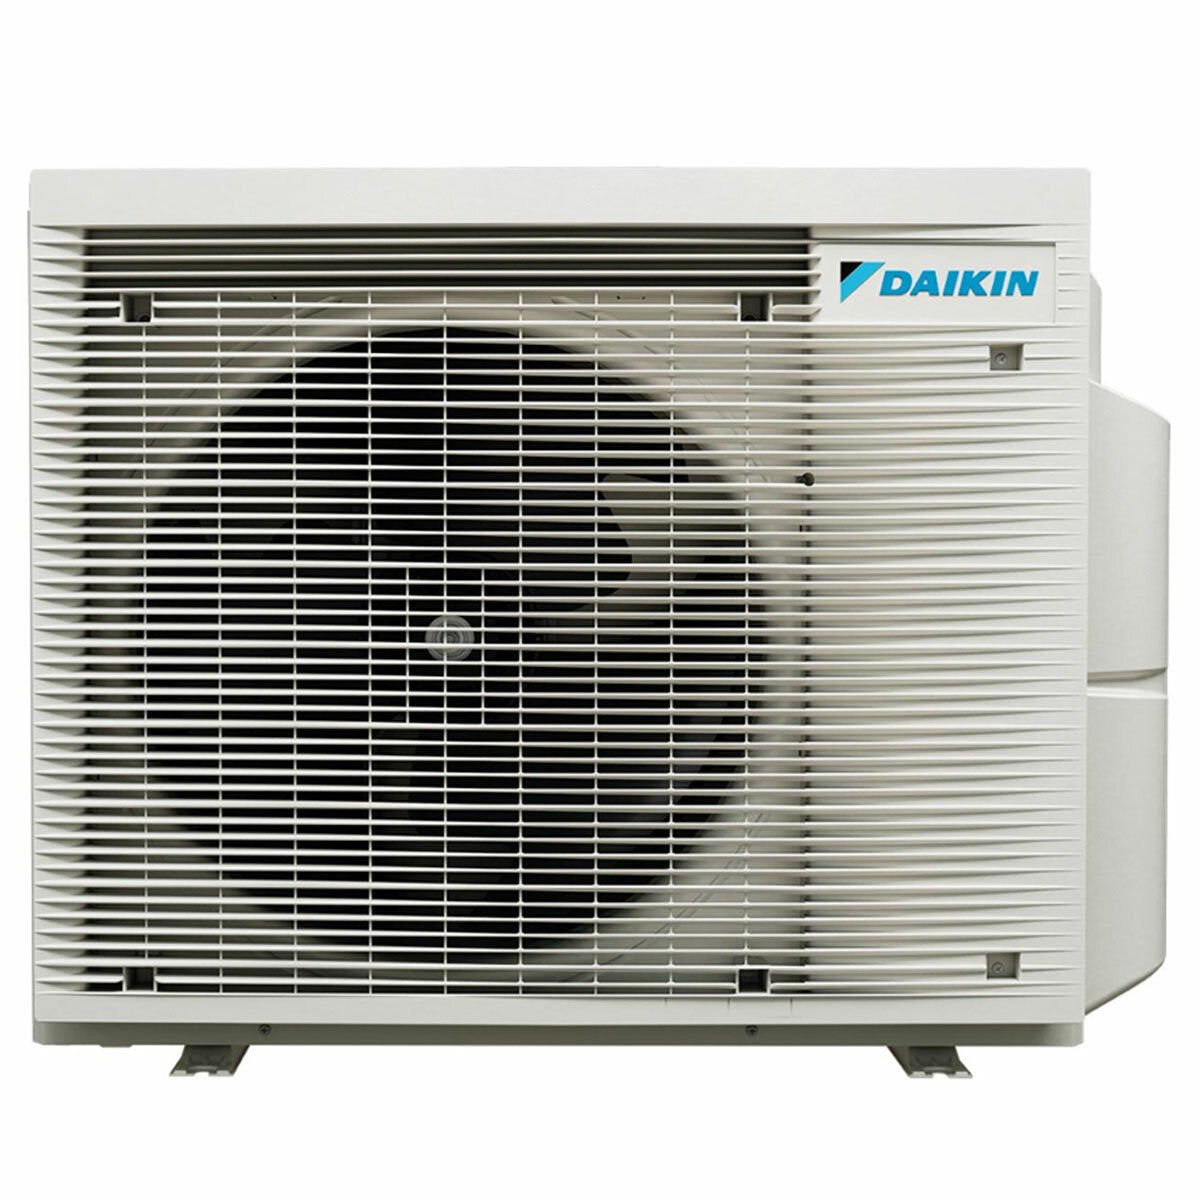 Daikin Stylish White Penta-Split-Klimaanlage 7000+9000+9000+9000+15000 BTU Inverter A++ WLAN-Außeneinheit 7,8 kW